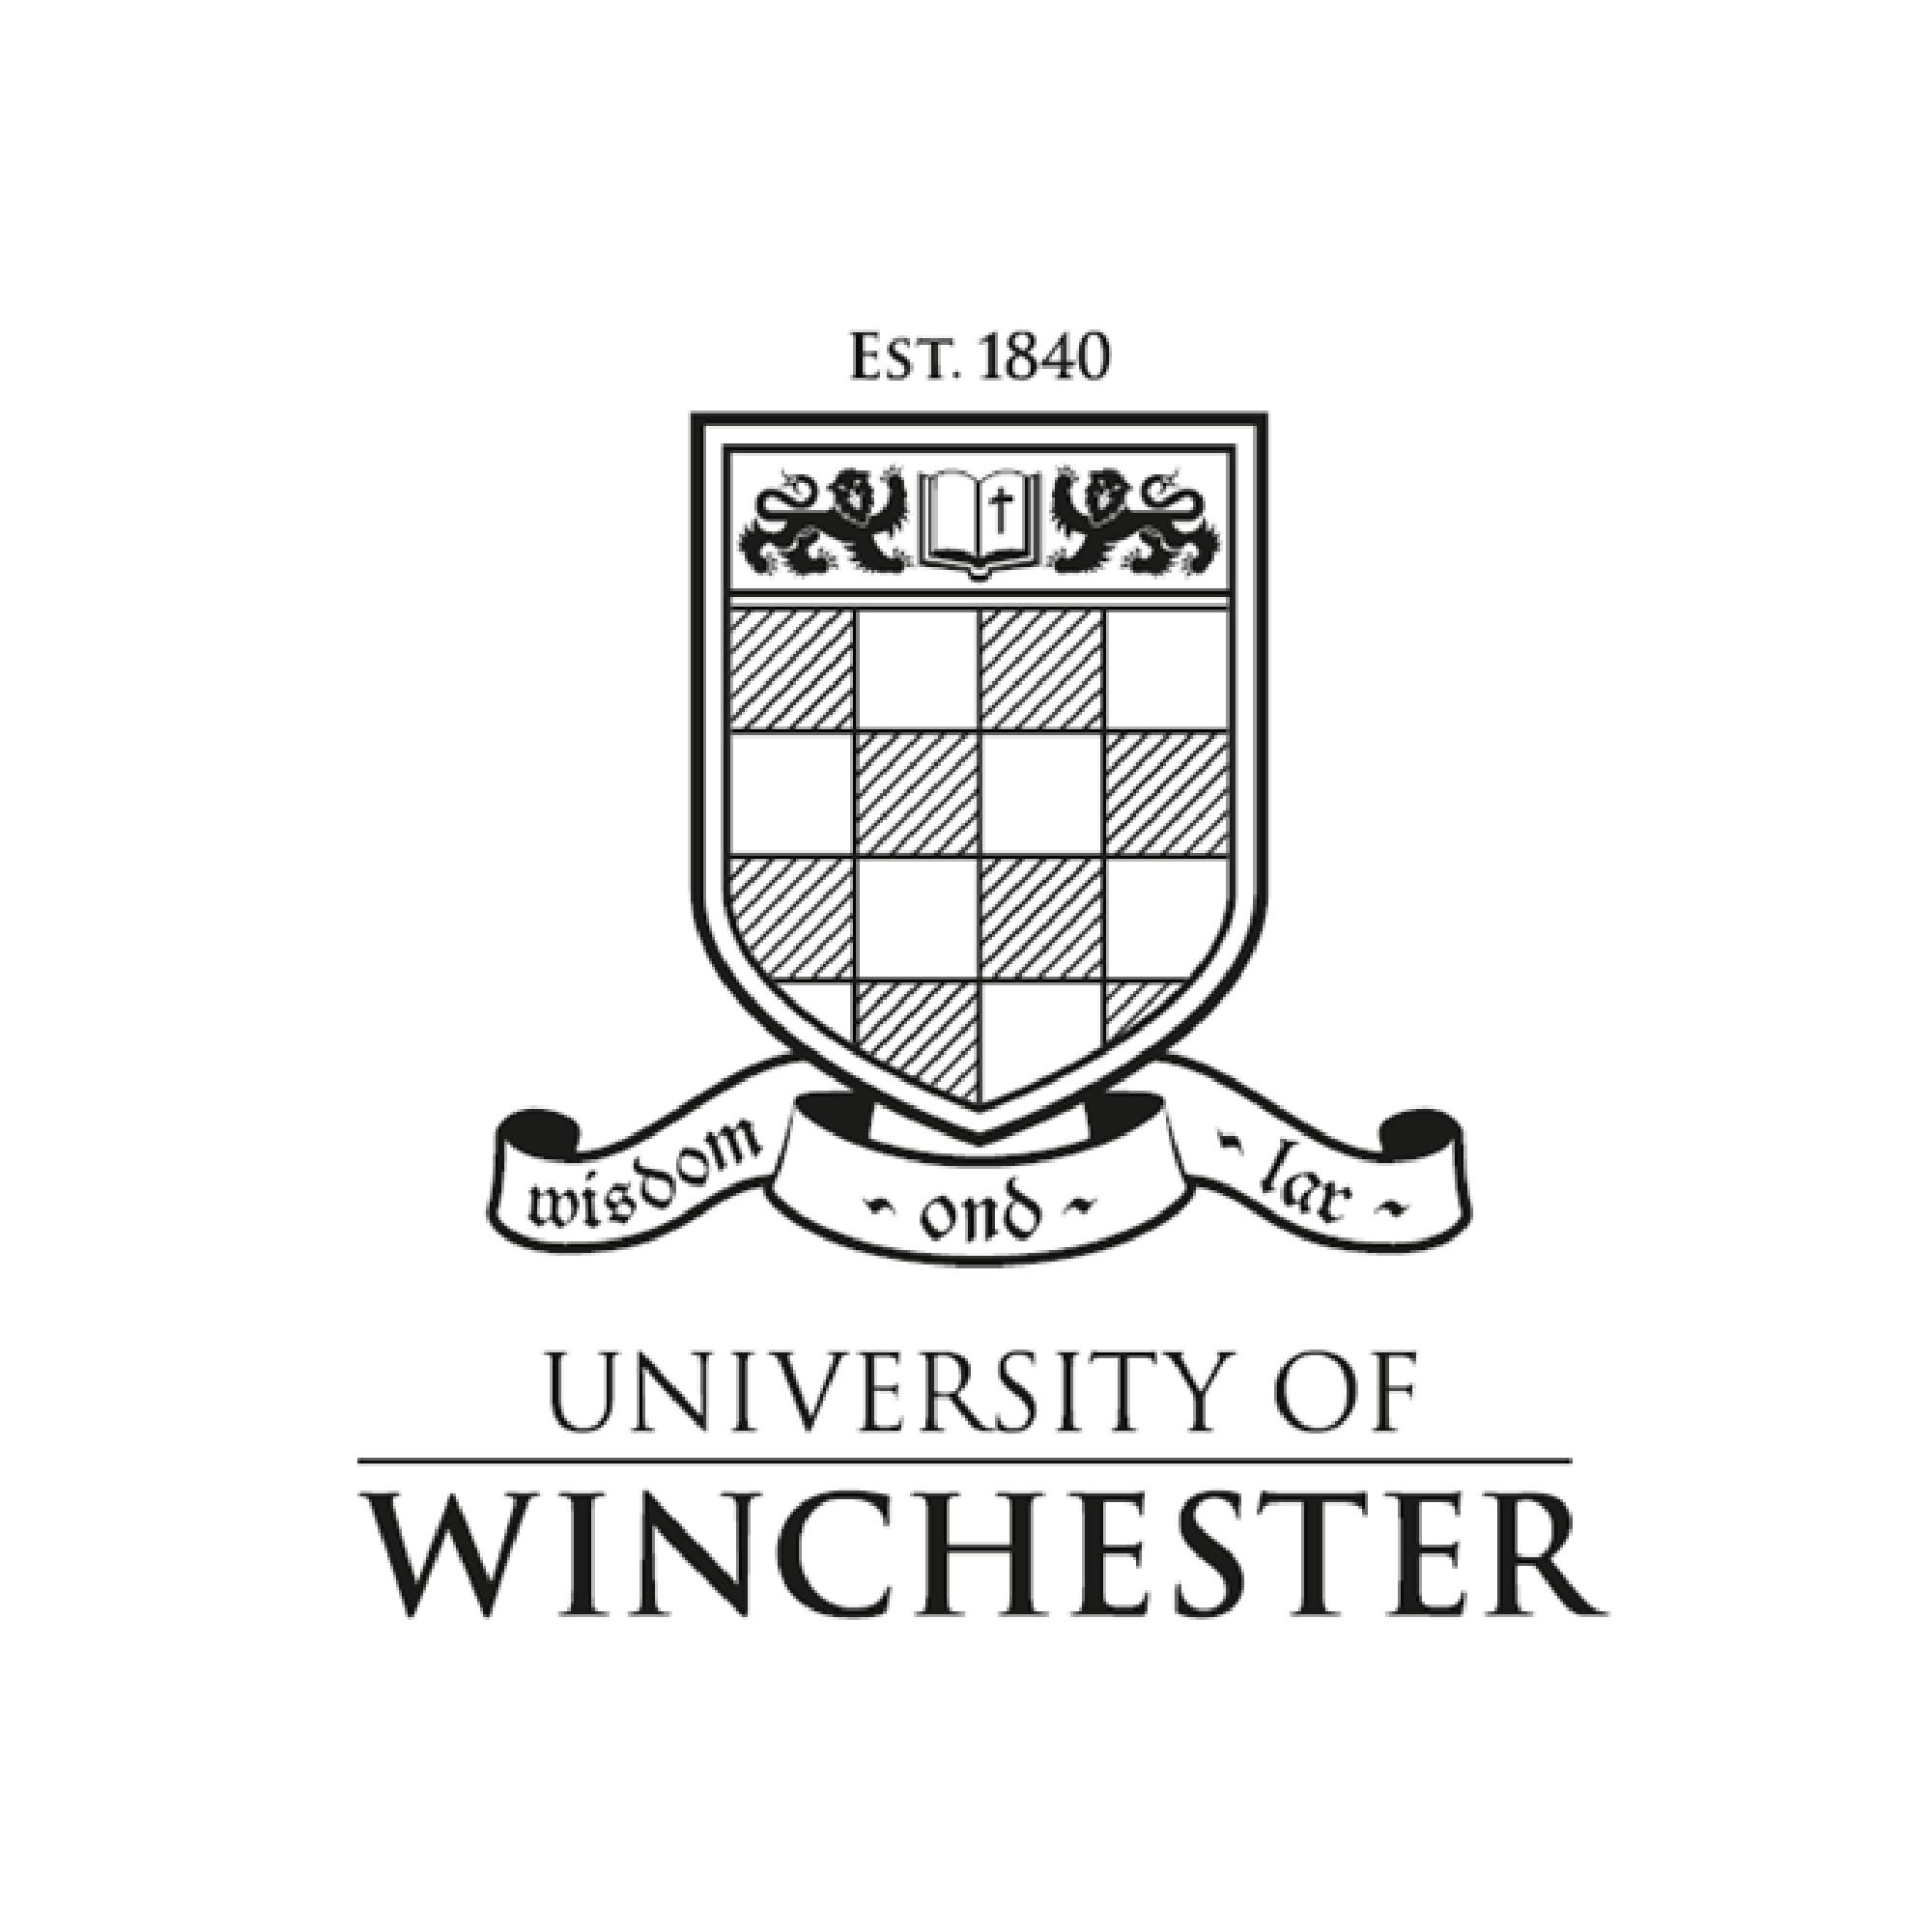 University of Winchester (Copy) (Copy) (Copy) (Copy)